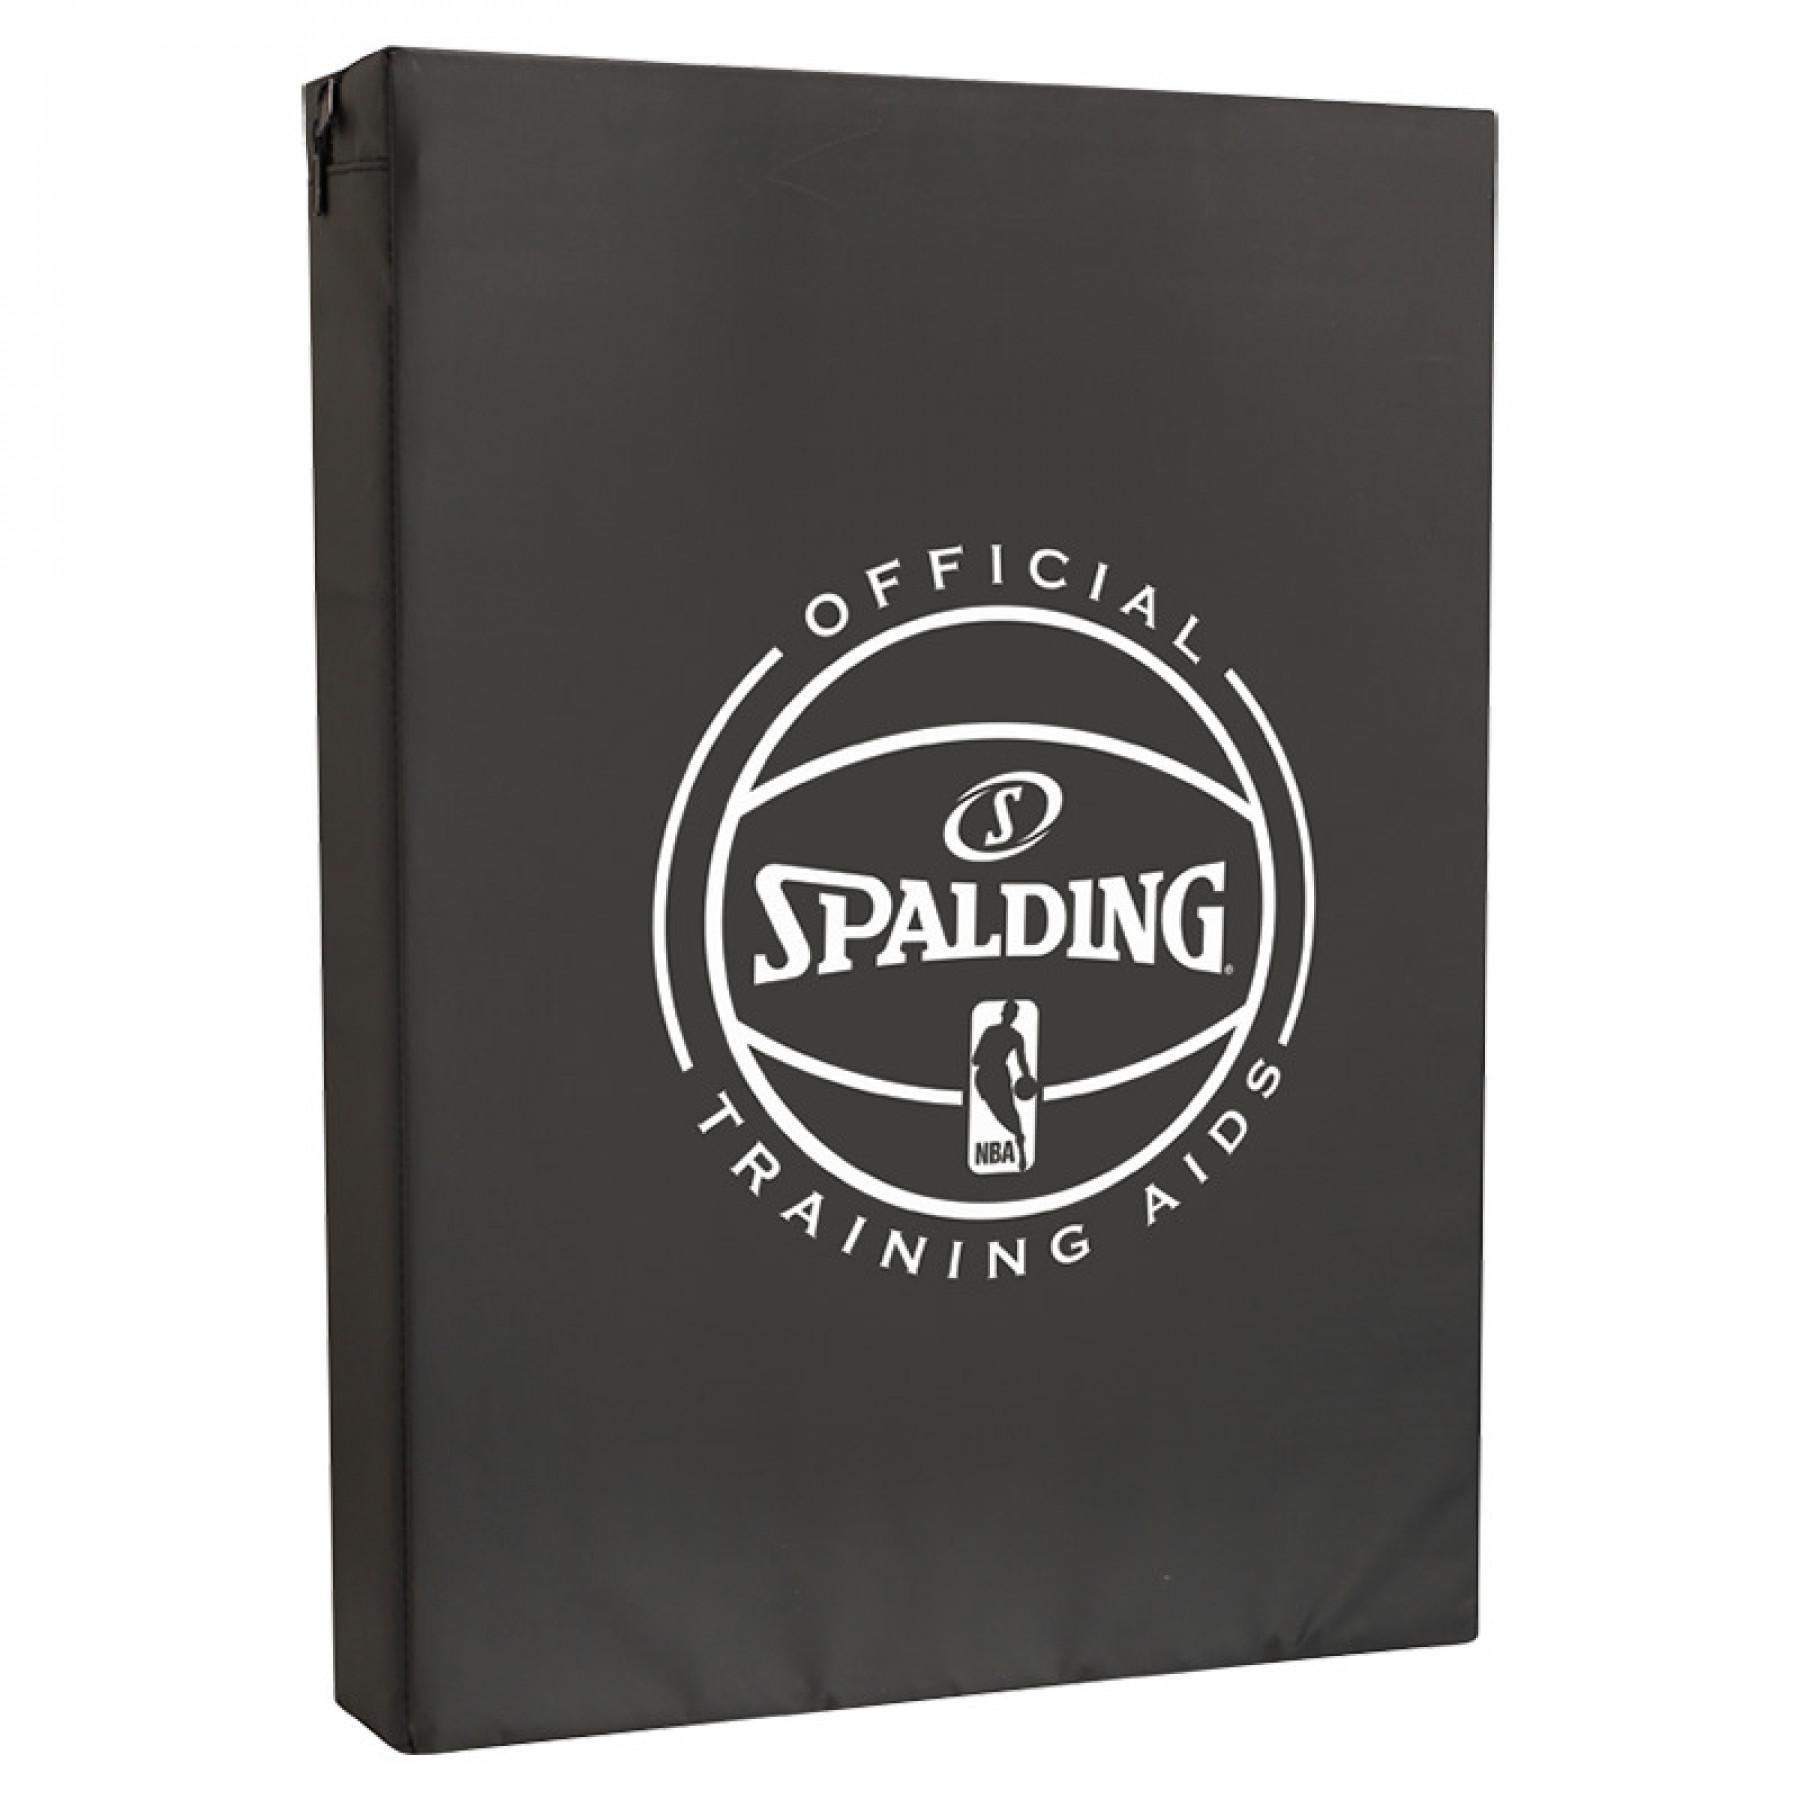 Consiglio Spalding Blocking (8483cn)